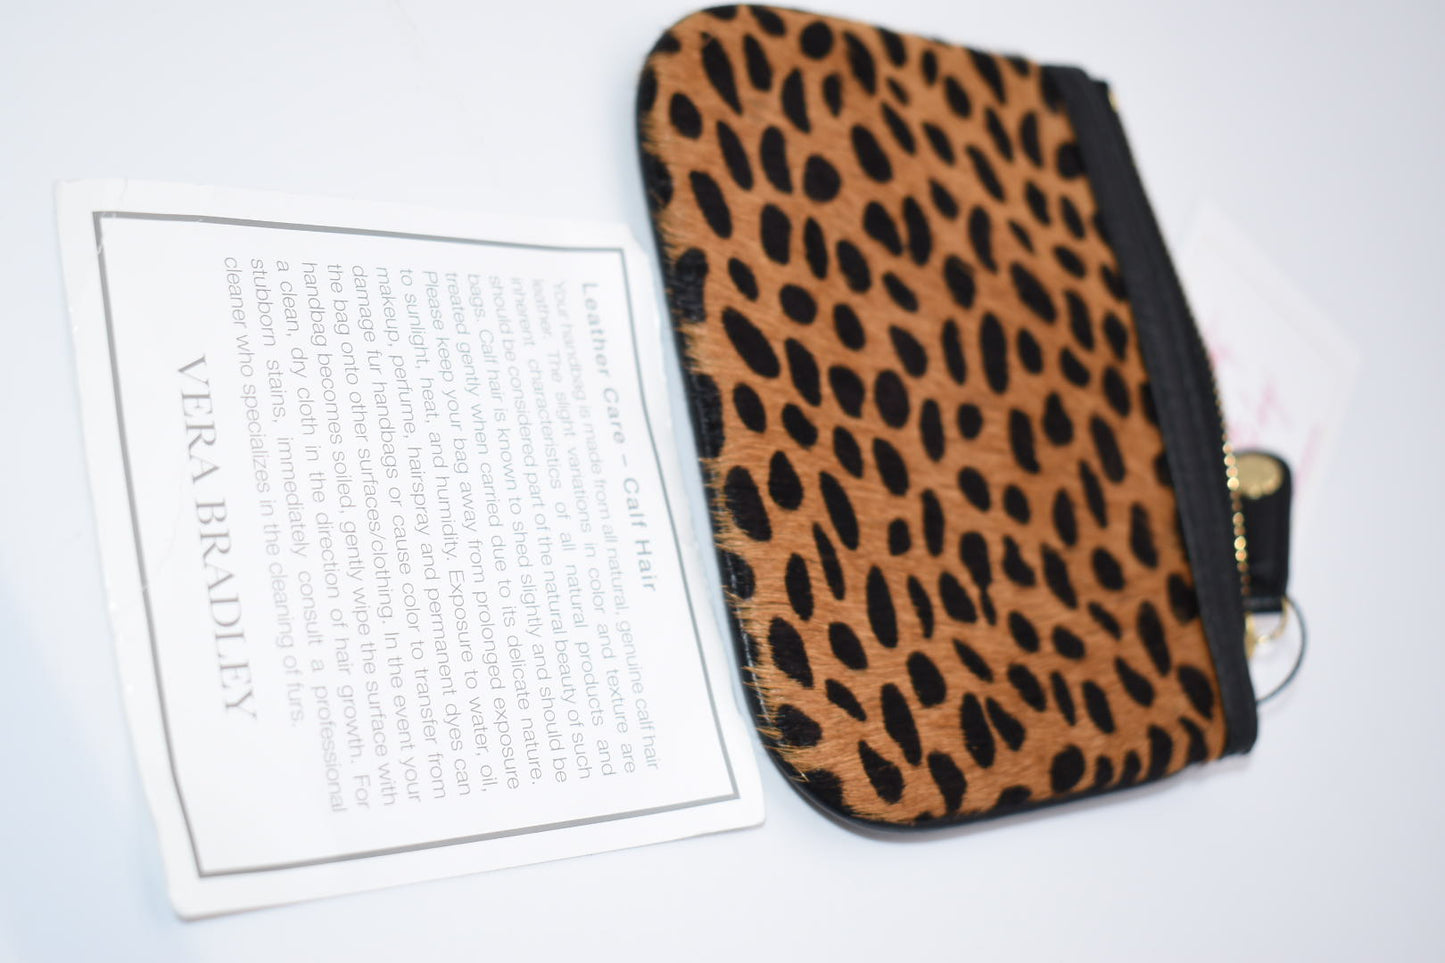 Vera Bradley Leather Callie Zip Pouch in "Cheetah" Pattern